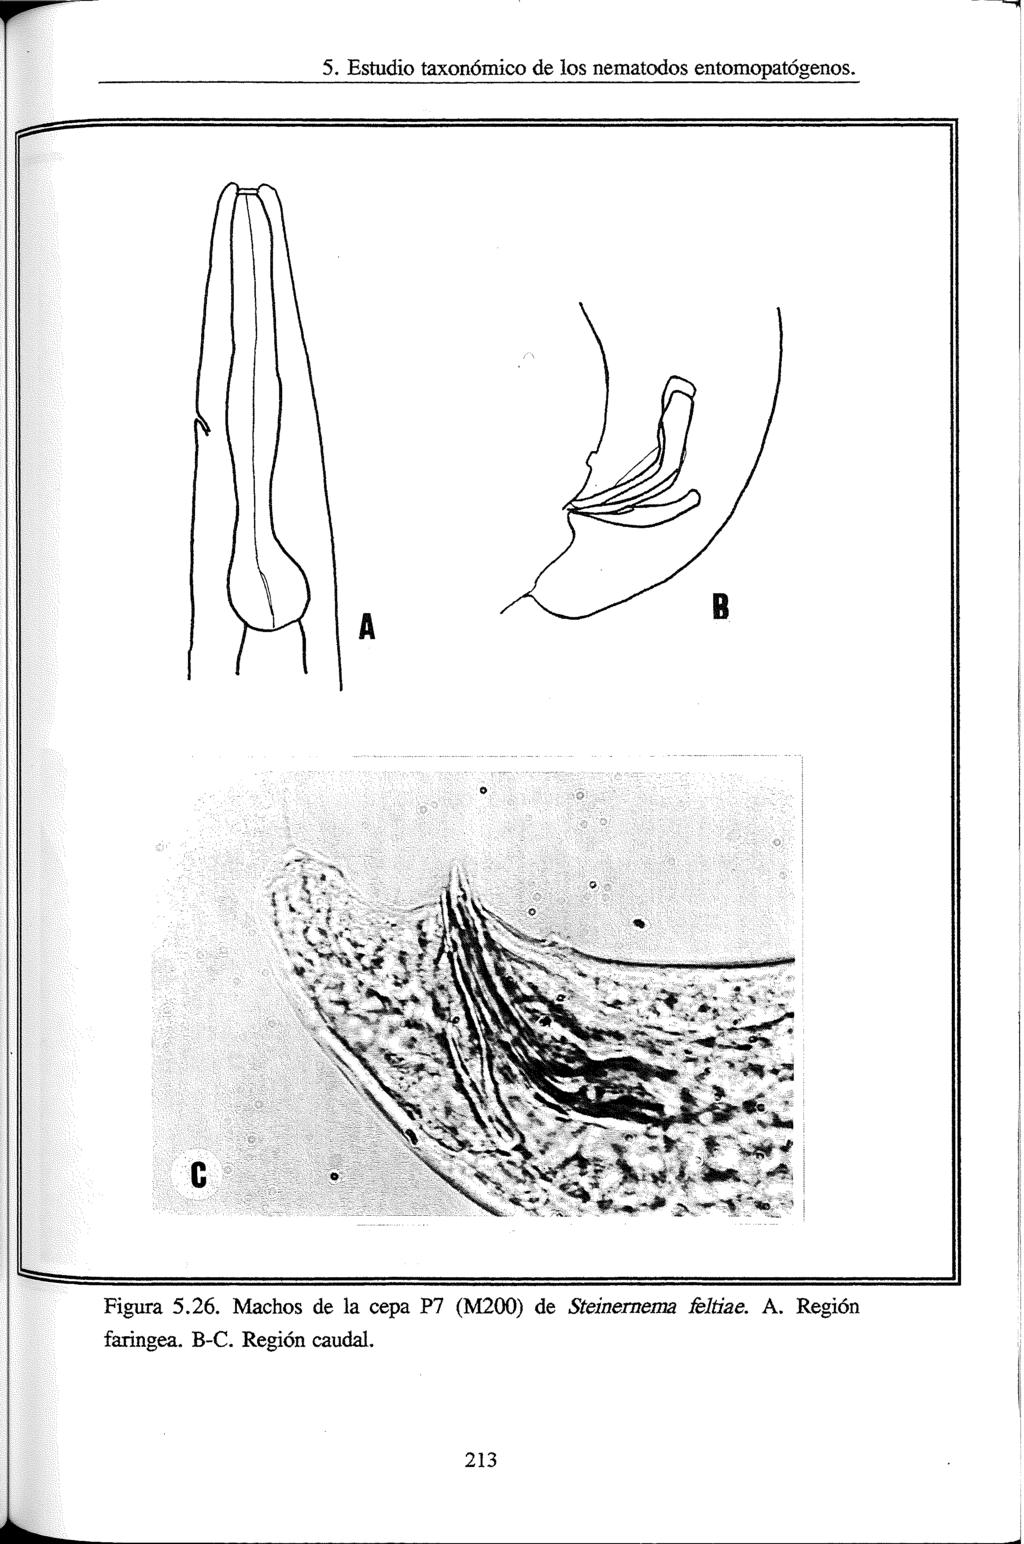 5. Estudio taxonómico de los nematodos entomopatogenos. B Figura 5.26.